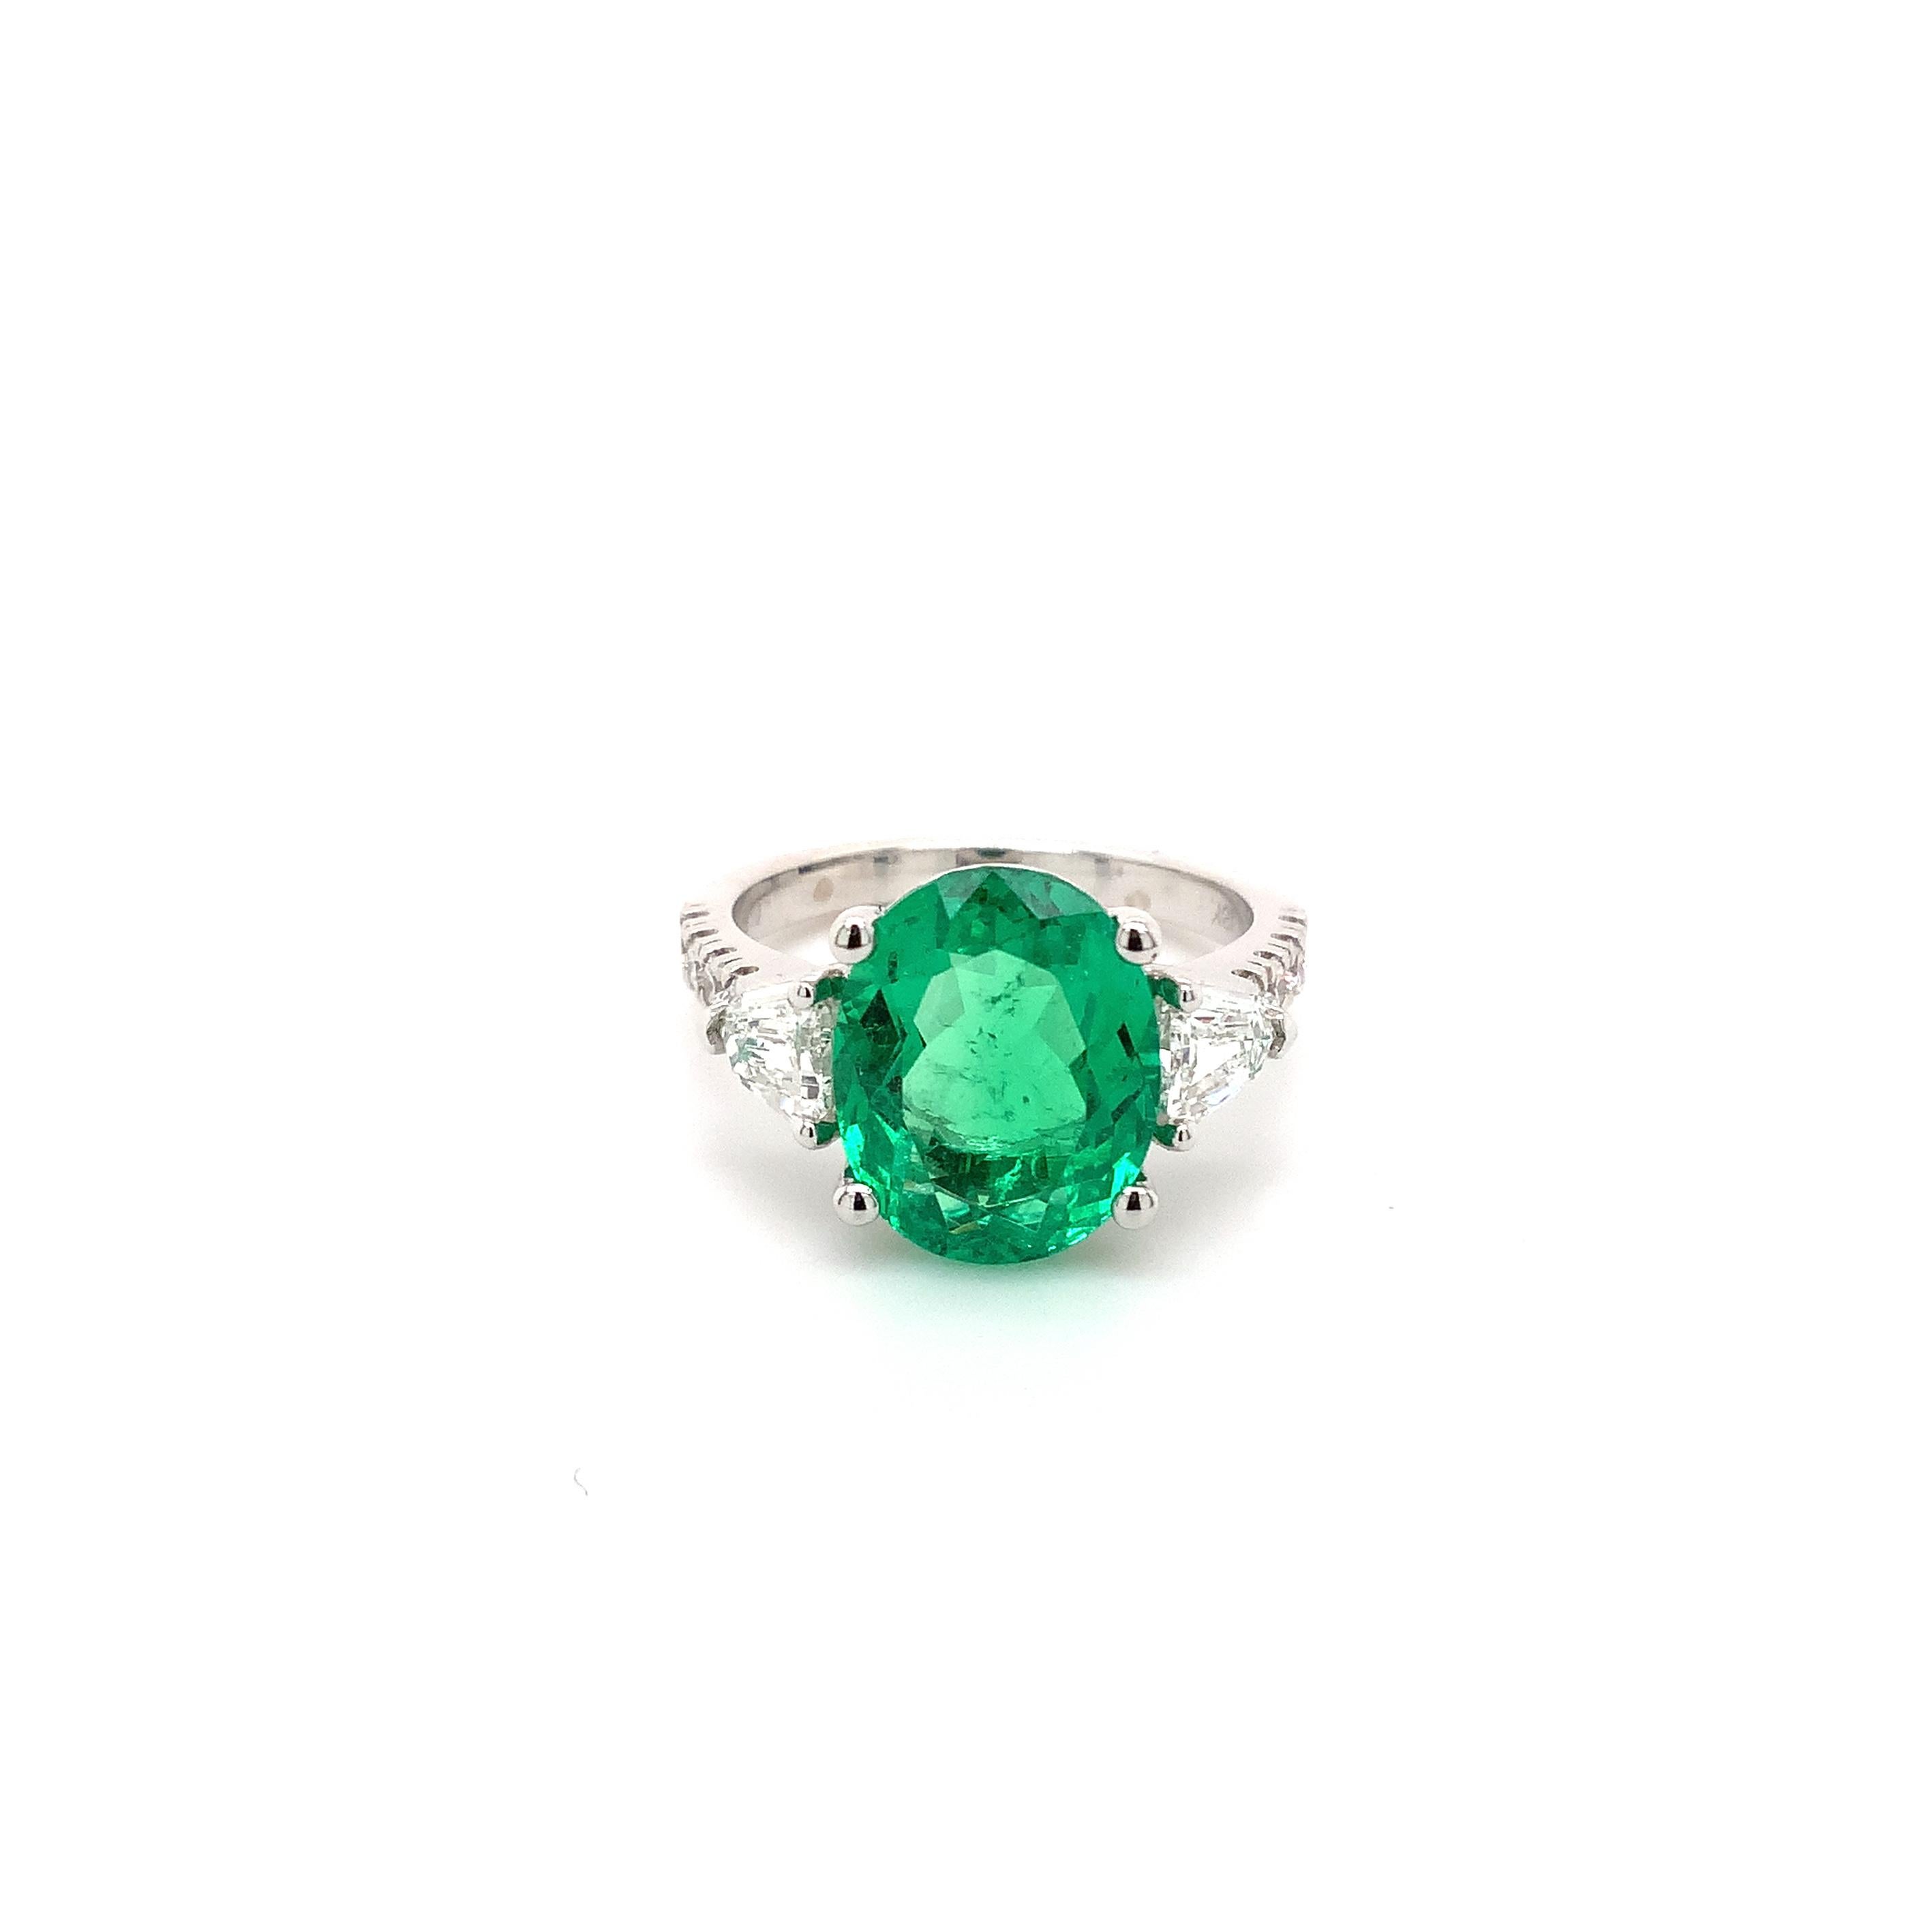 Diese One Of A Kind natürlichen feinen kolumbianischen Smaragd und Diamant-Ring ist in 18K Weißgold 4 Prong-Fassung gesetzt.
Ein Oval Mix Cut  Smaragd Gleich 3,60 cts tw. 12x9.5mm 
2 kugelförmige Diamanten im Stufenschliff 0,60 Karat
8  Runde